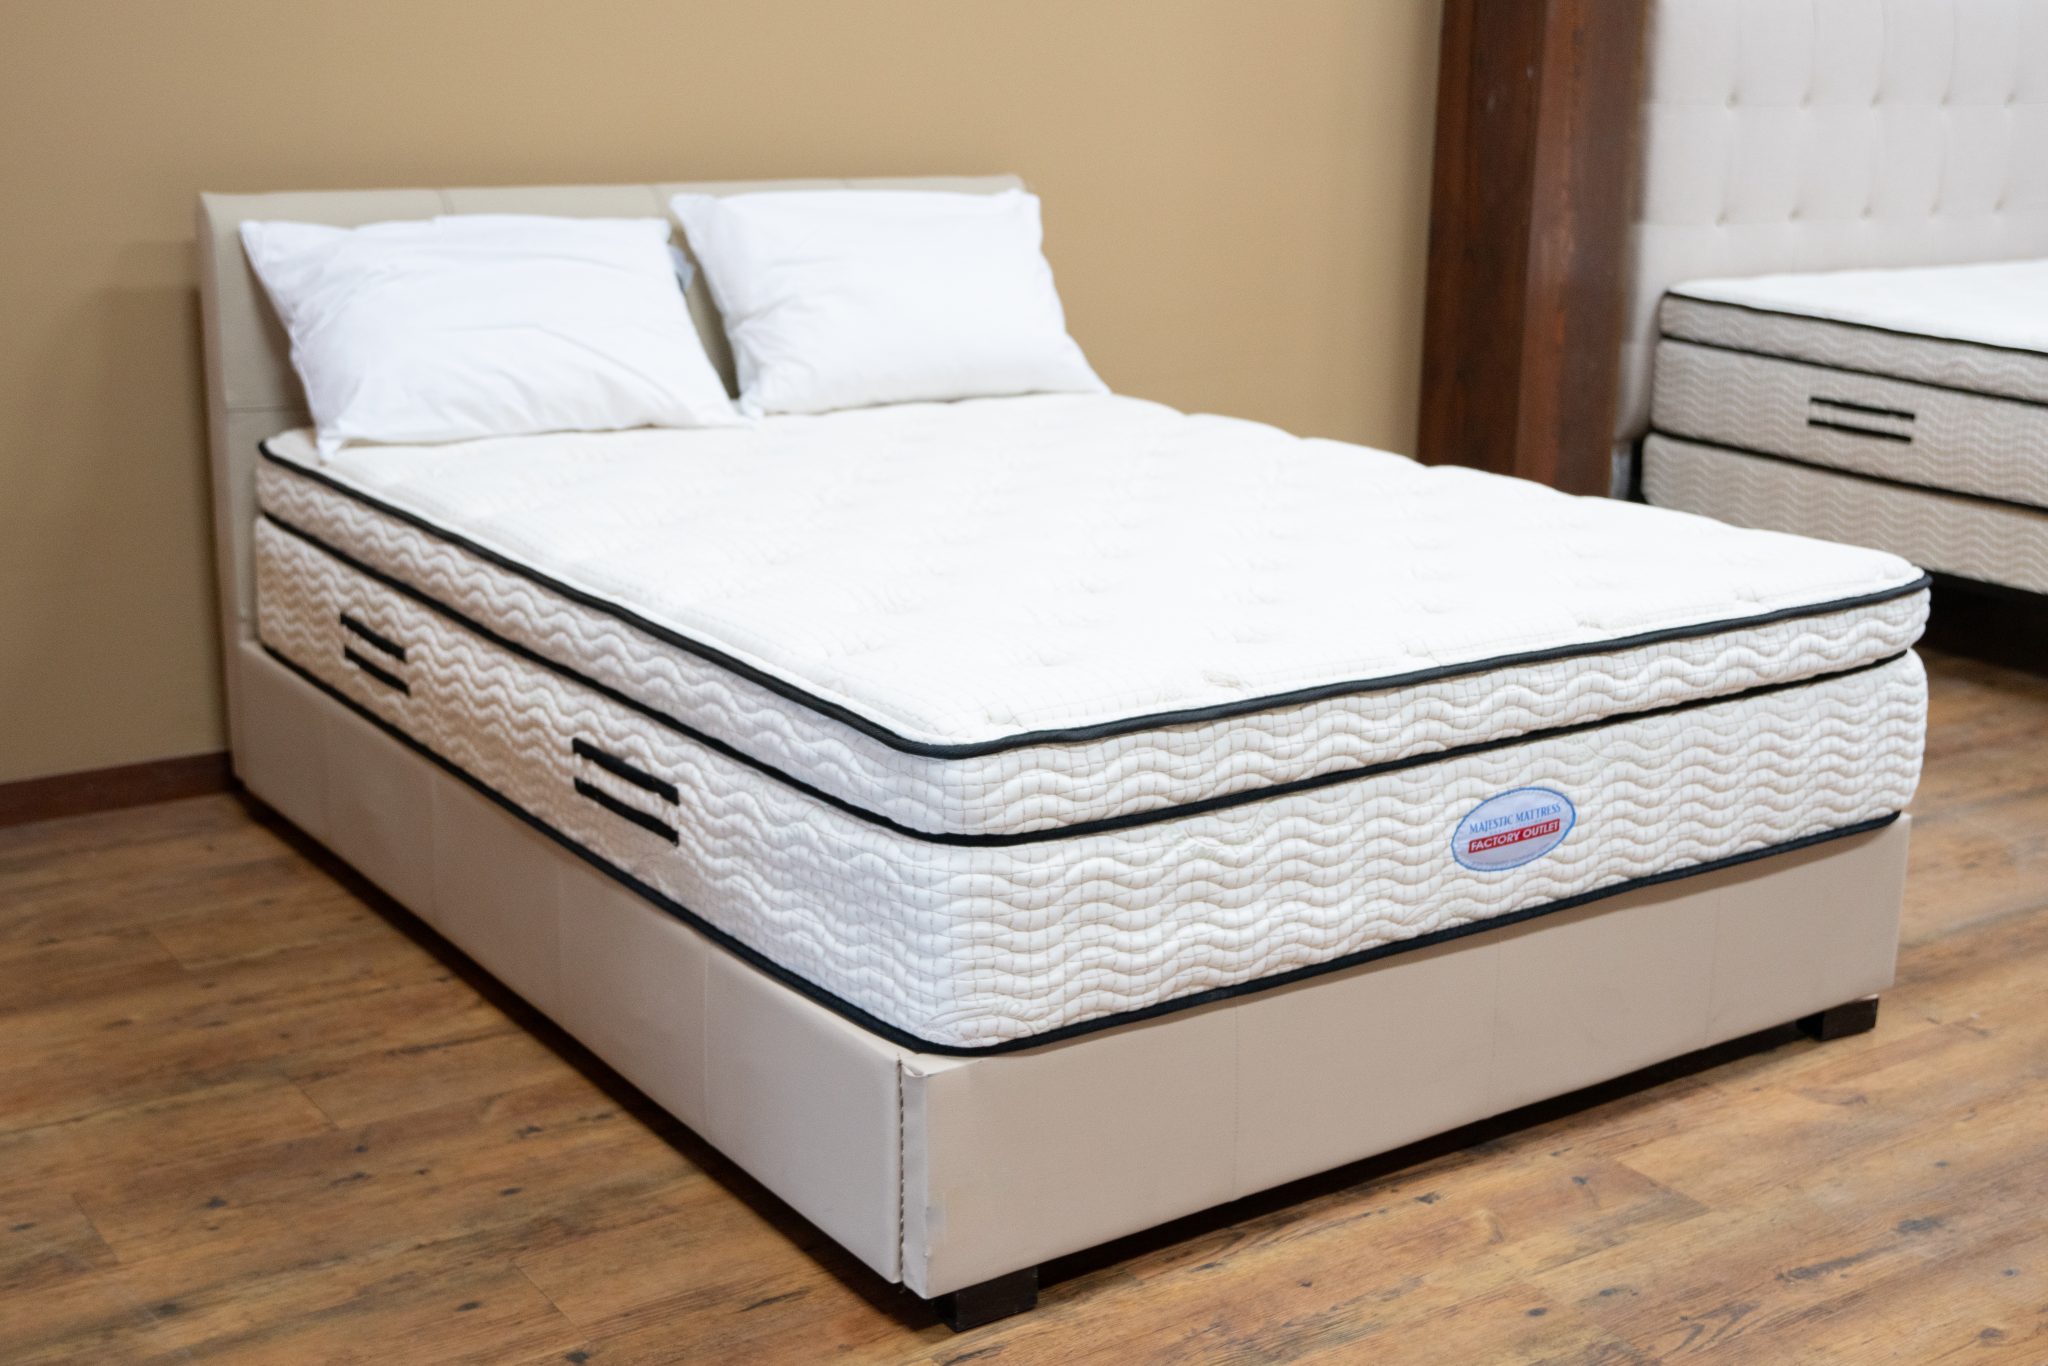 is a hybrid mattress better than foam